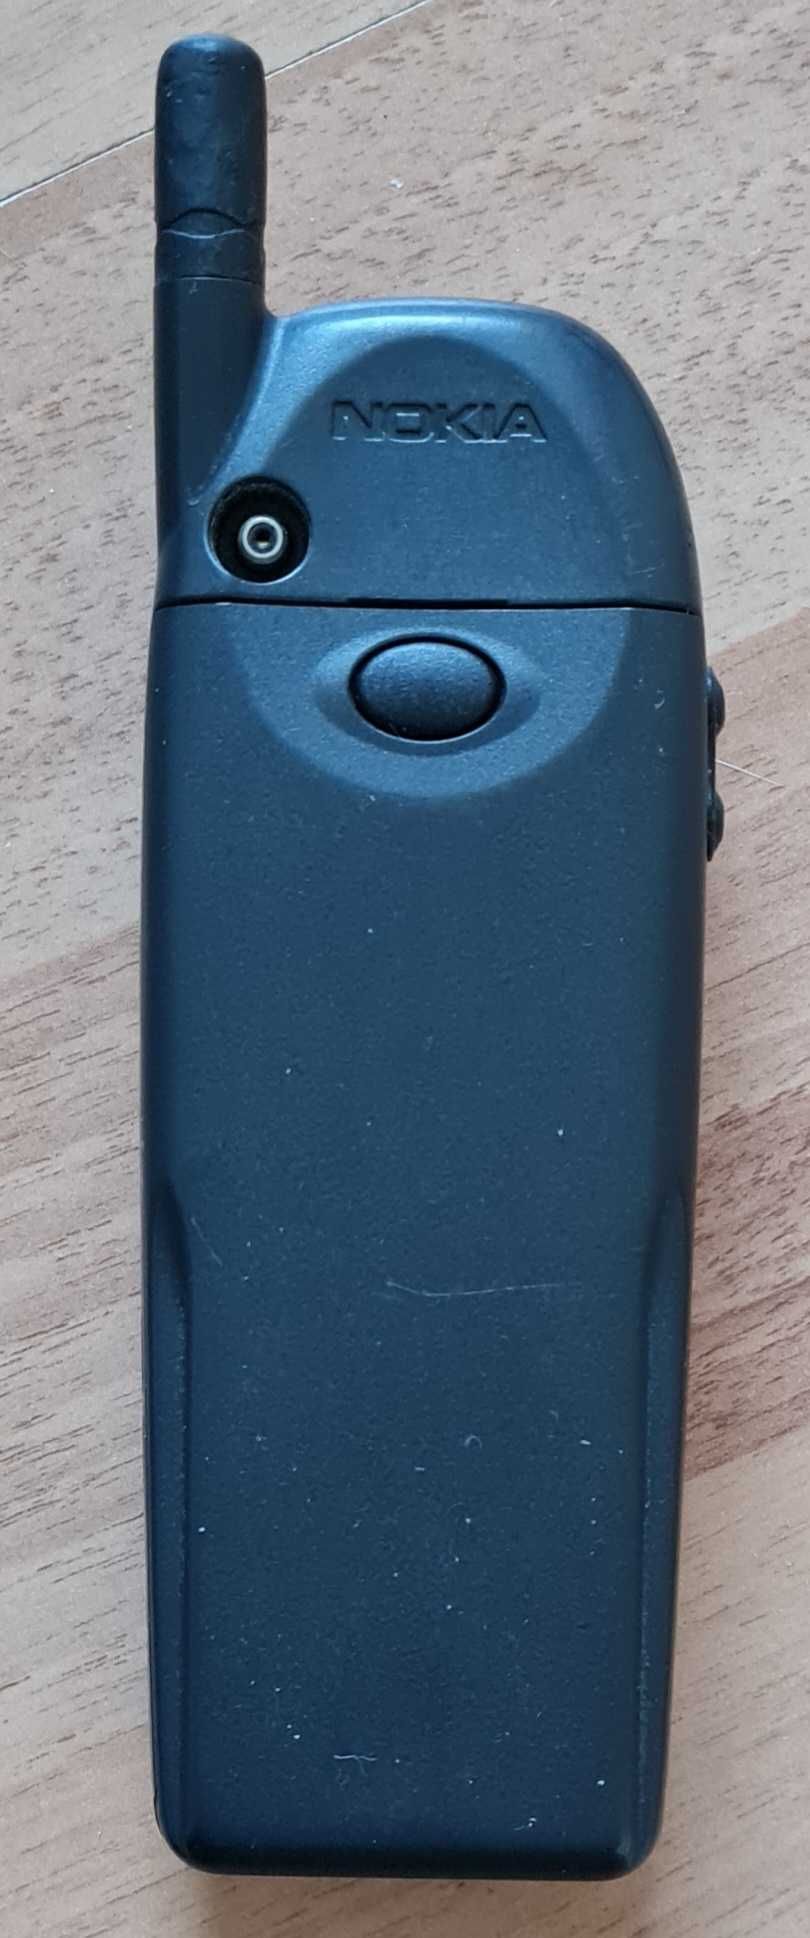 Nokia 6110 Finland ретро